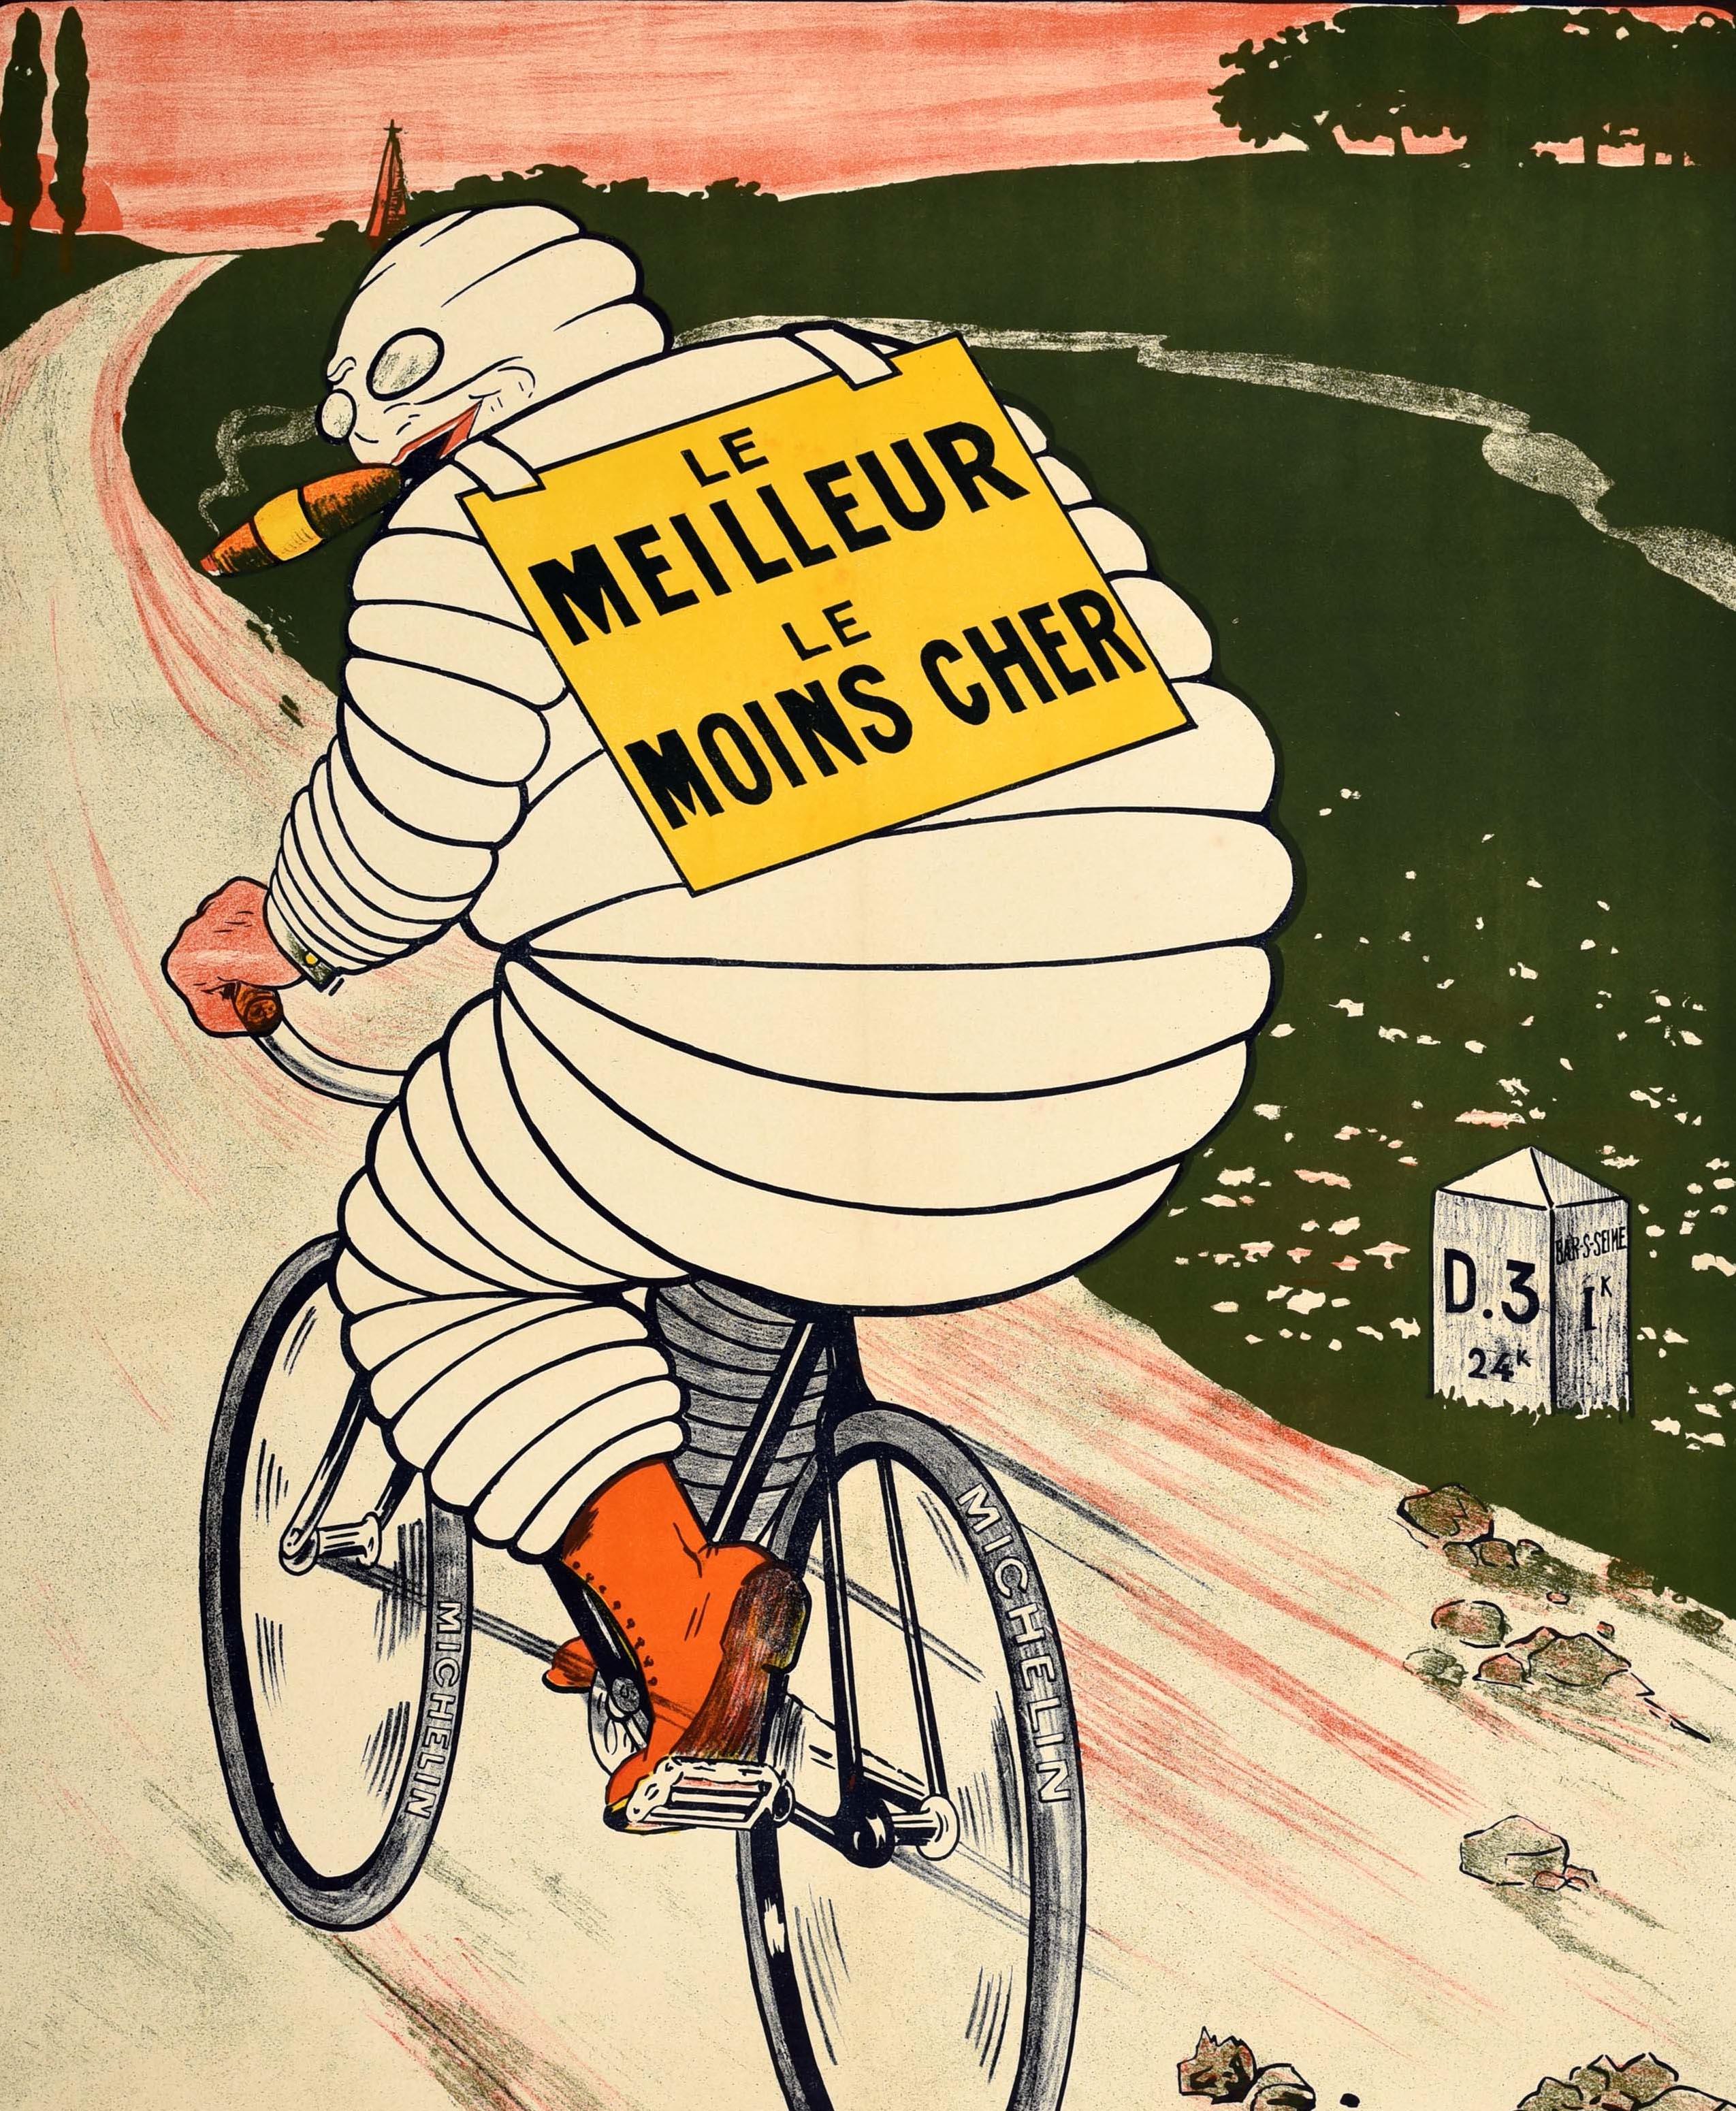 Originales antikes Werbeplakat für Michelin-Reifen mit einer großartigen Illustration, die das Markenzeichen von Bibendum - die ikonische Figur des Michelin-Männchens aus Reifen - zeigt, wie er eine Zigarre raucht und mit einem Fahrrad in hohem